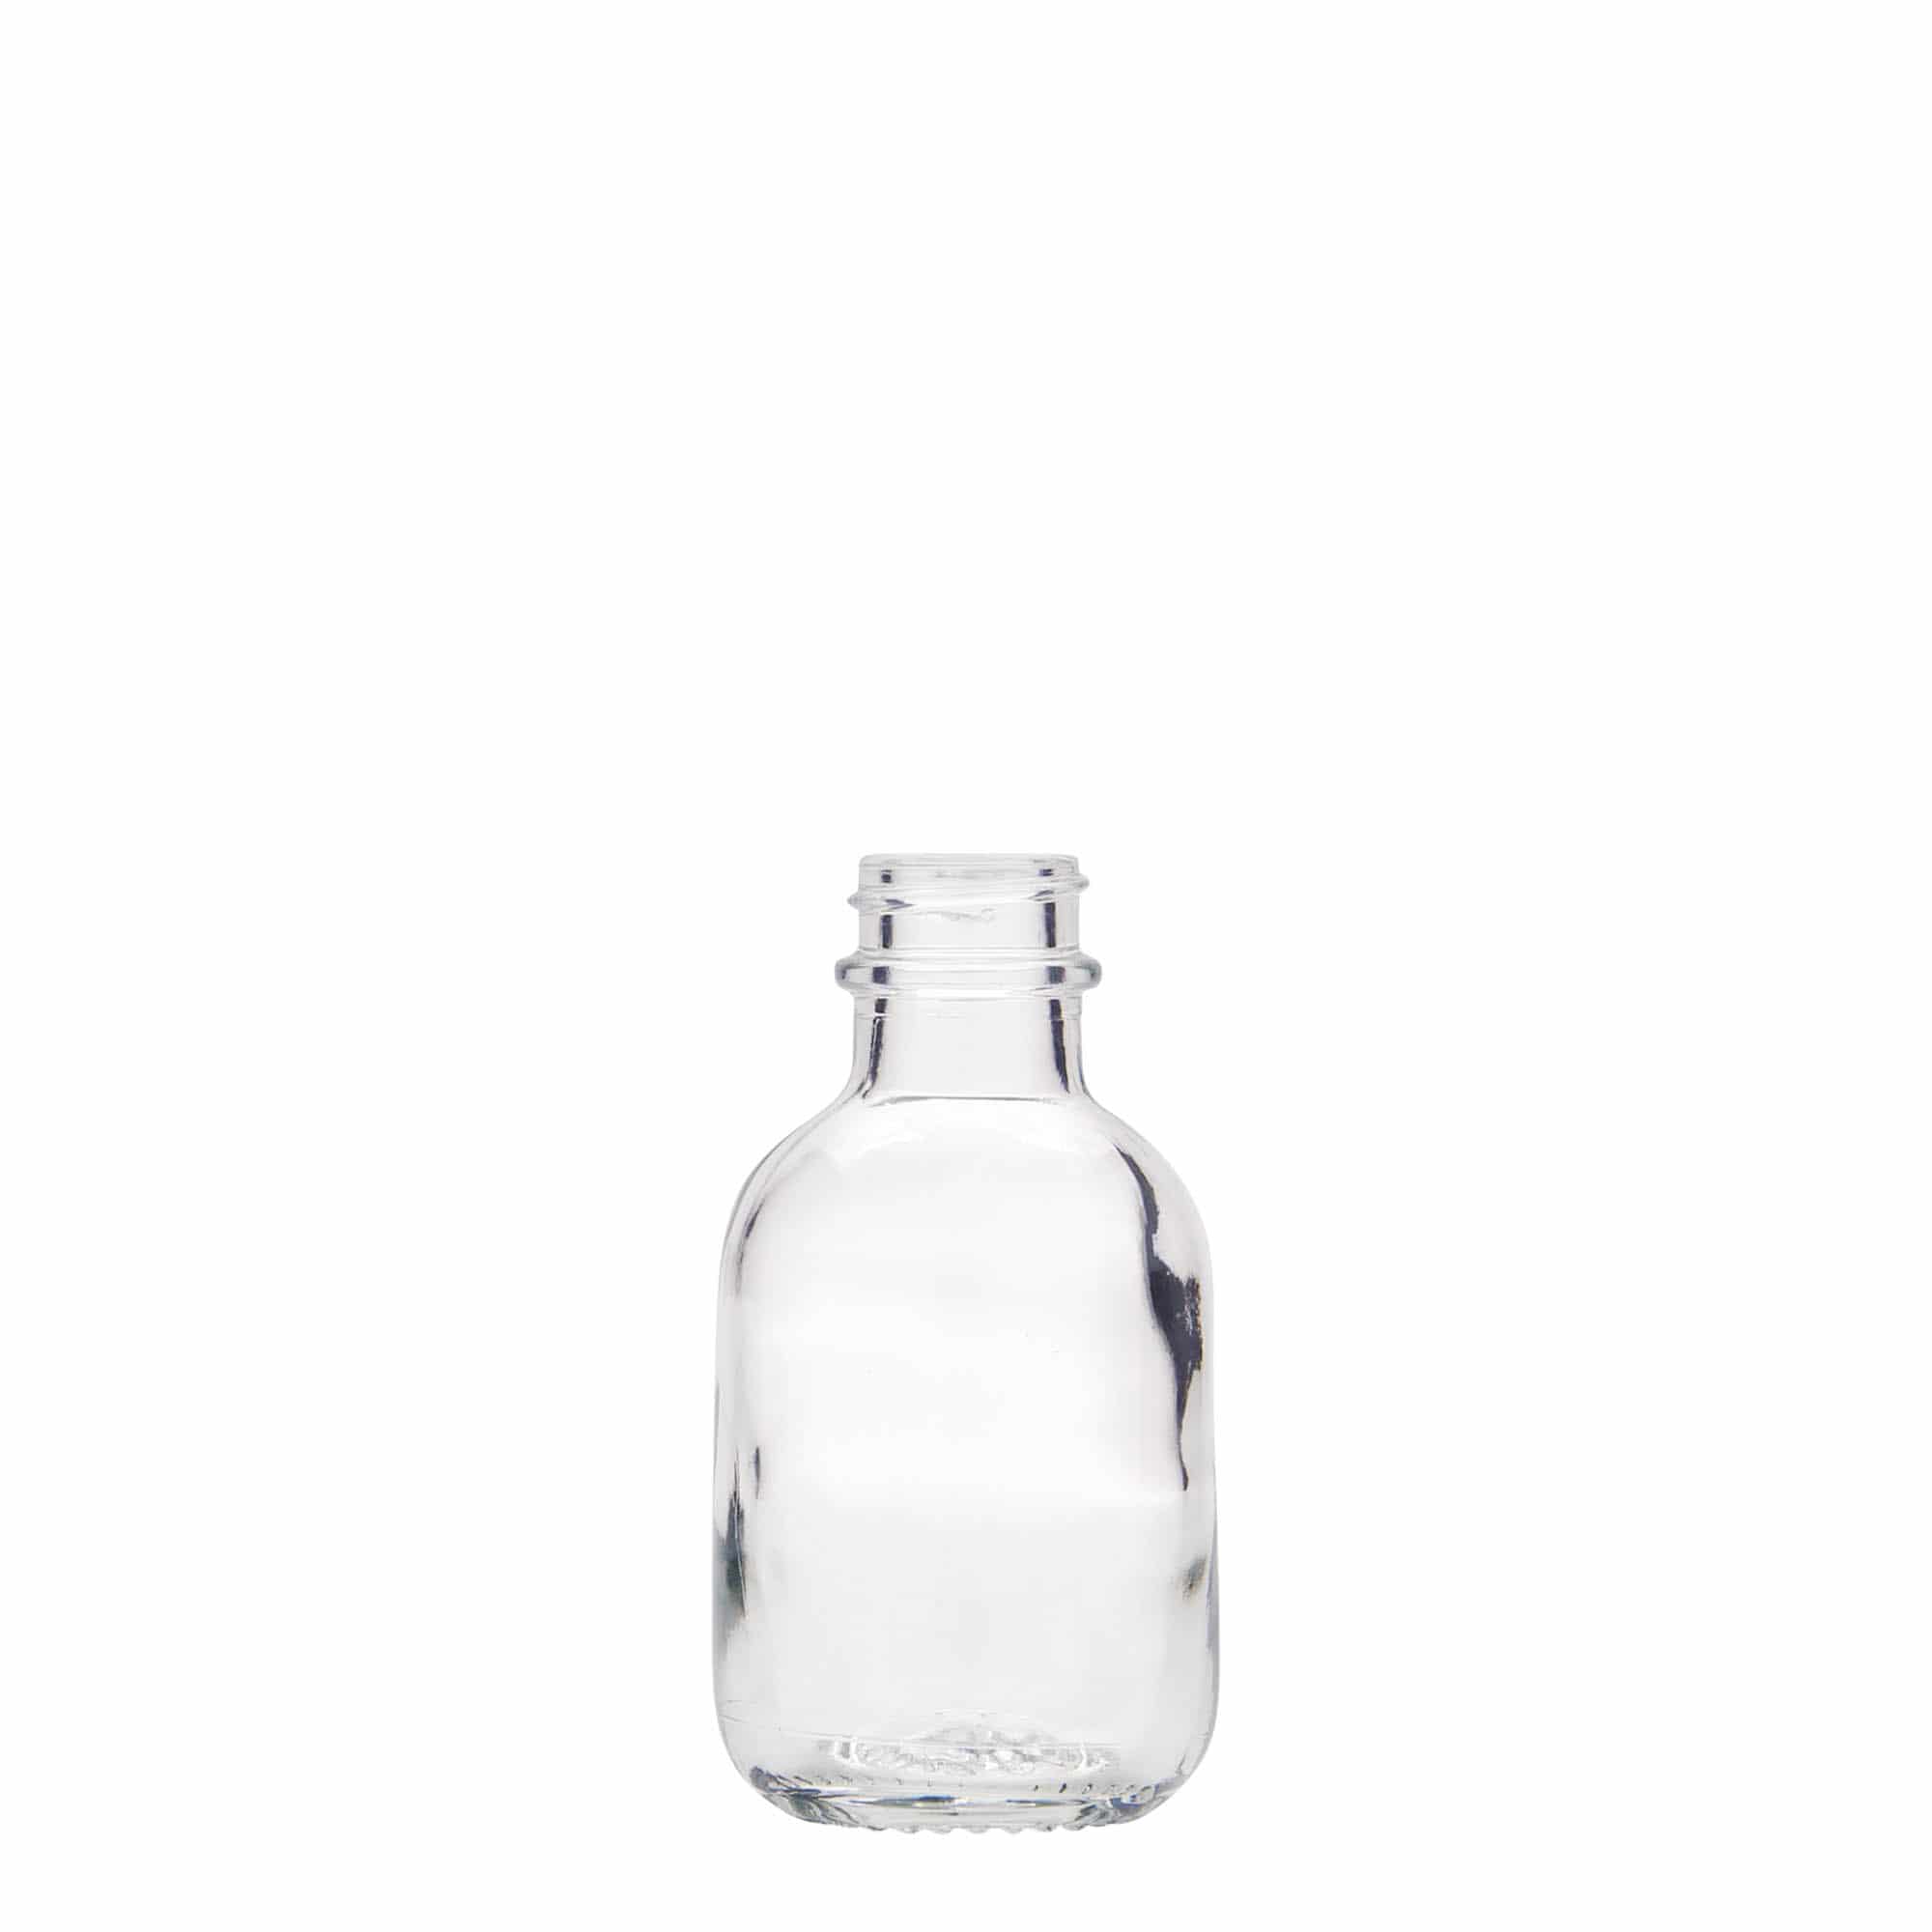 50 ml glass bottle 'Lotto', closure: GPI 22